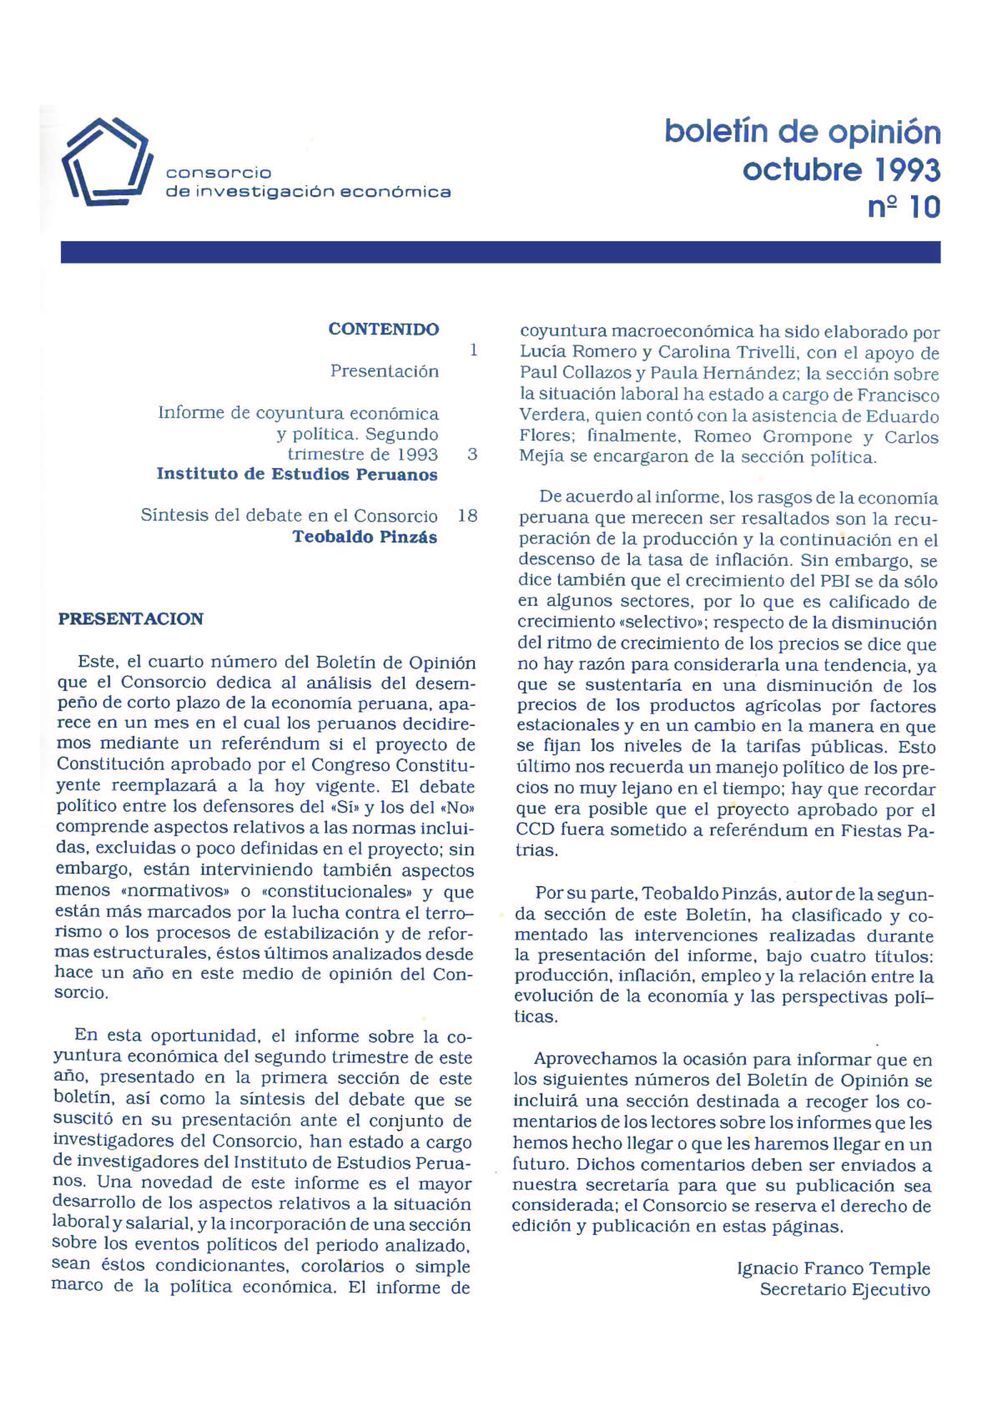 Boletín de opinión: Análisis de la economía peruana, 1993-II